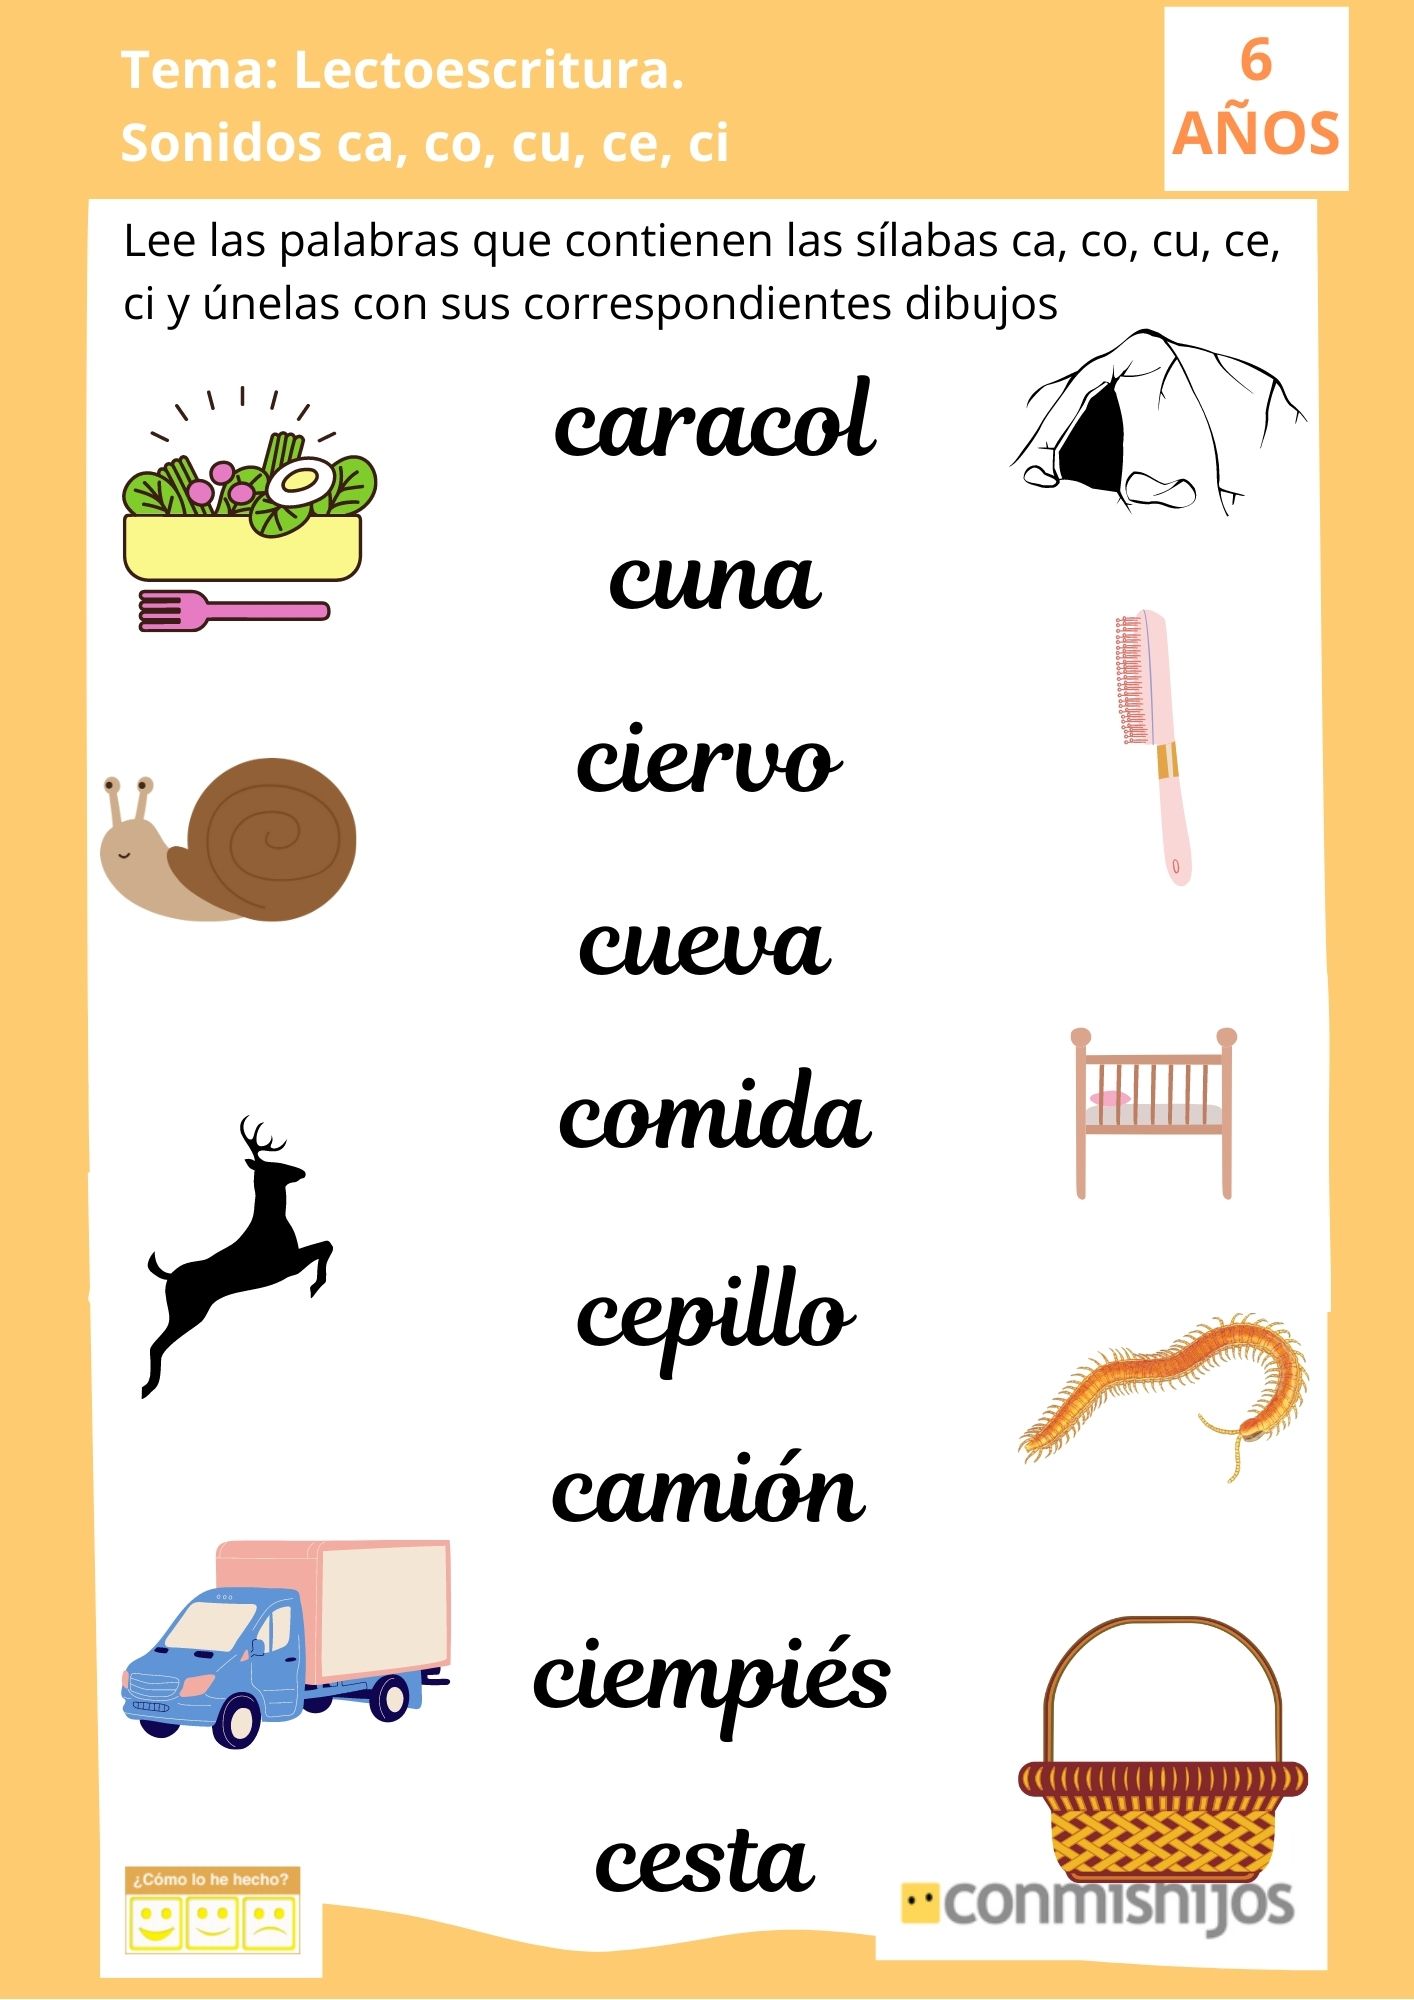 Ficha de lectoescritura para niños: Sonidos ca, co, cu, ce, ci